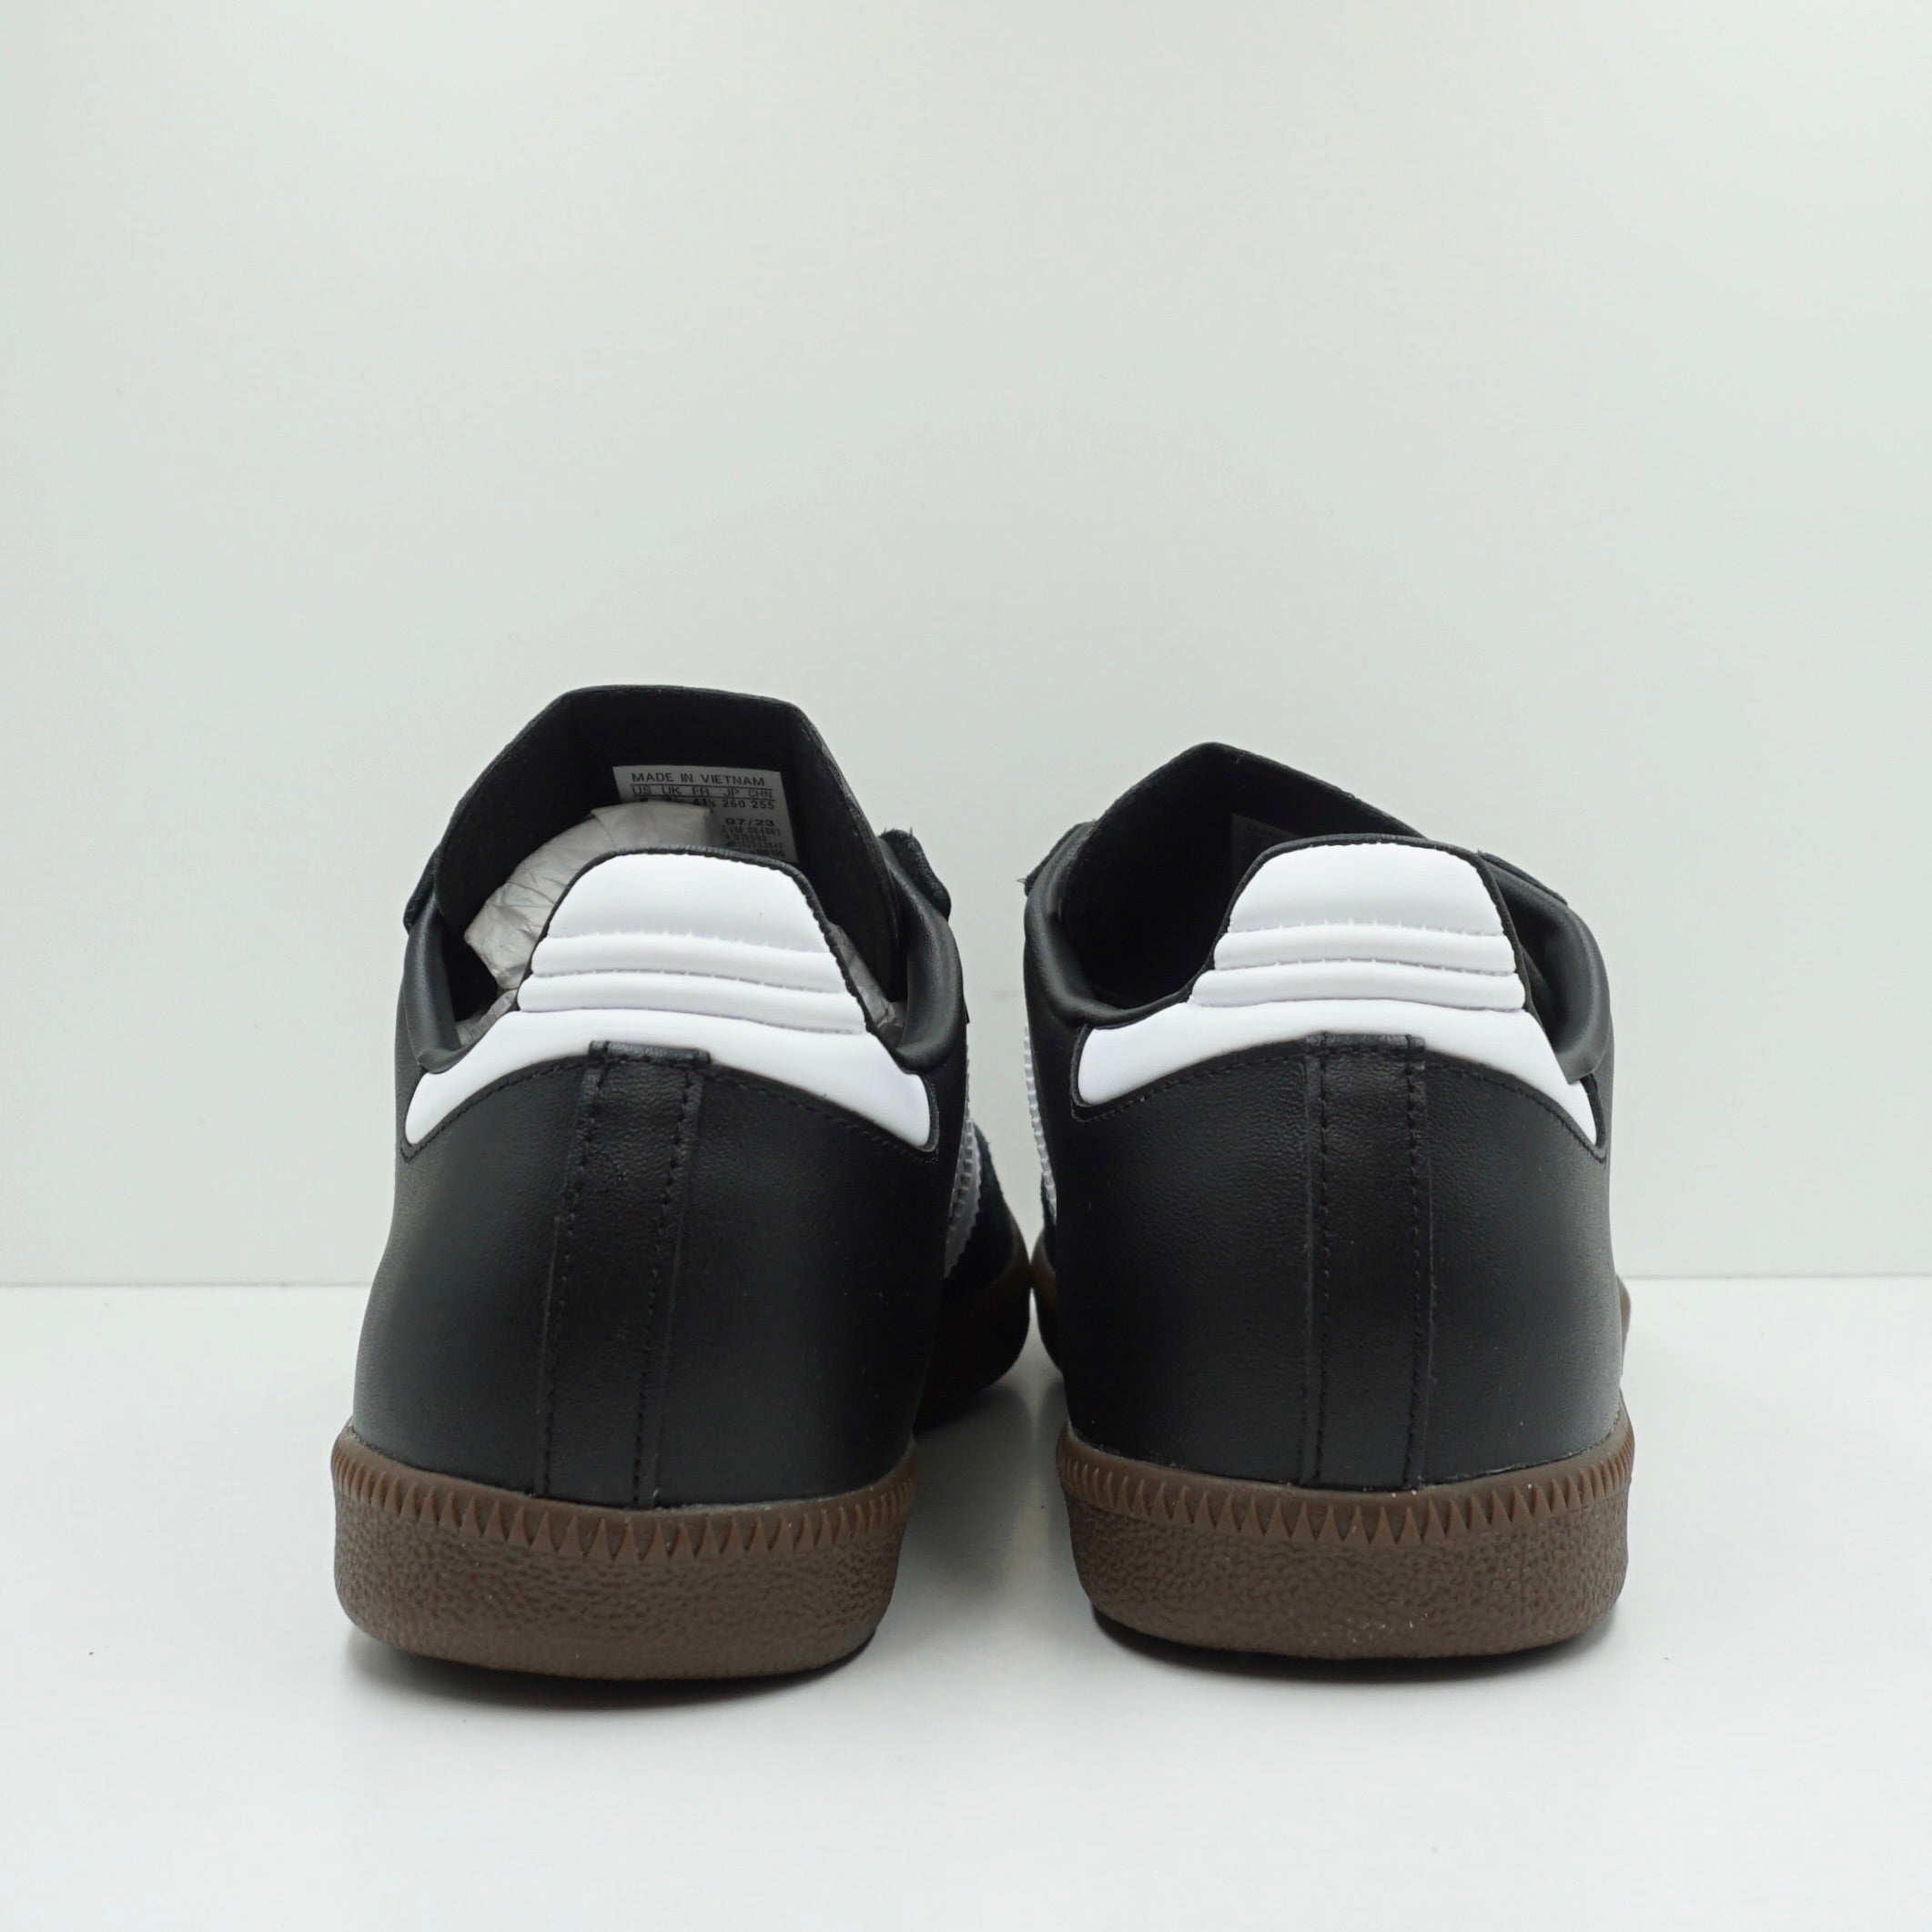 Adidas Samba Leather Black White